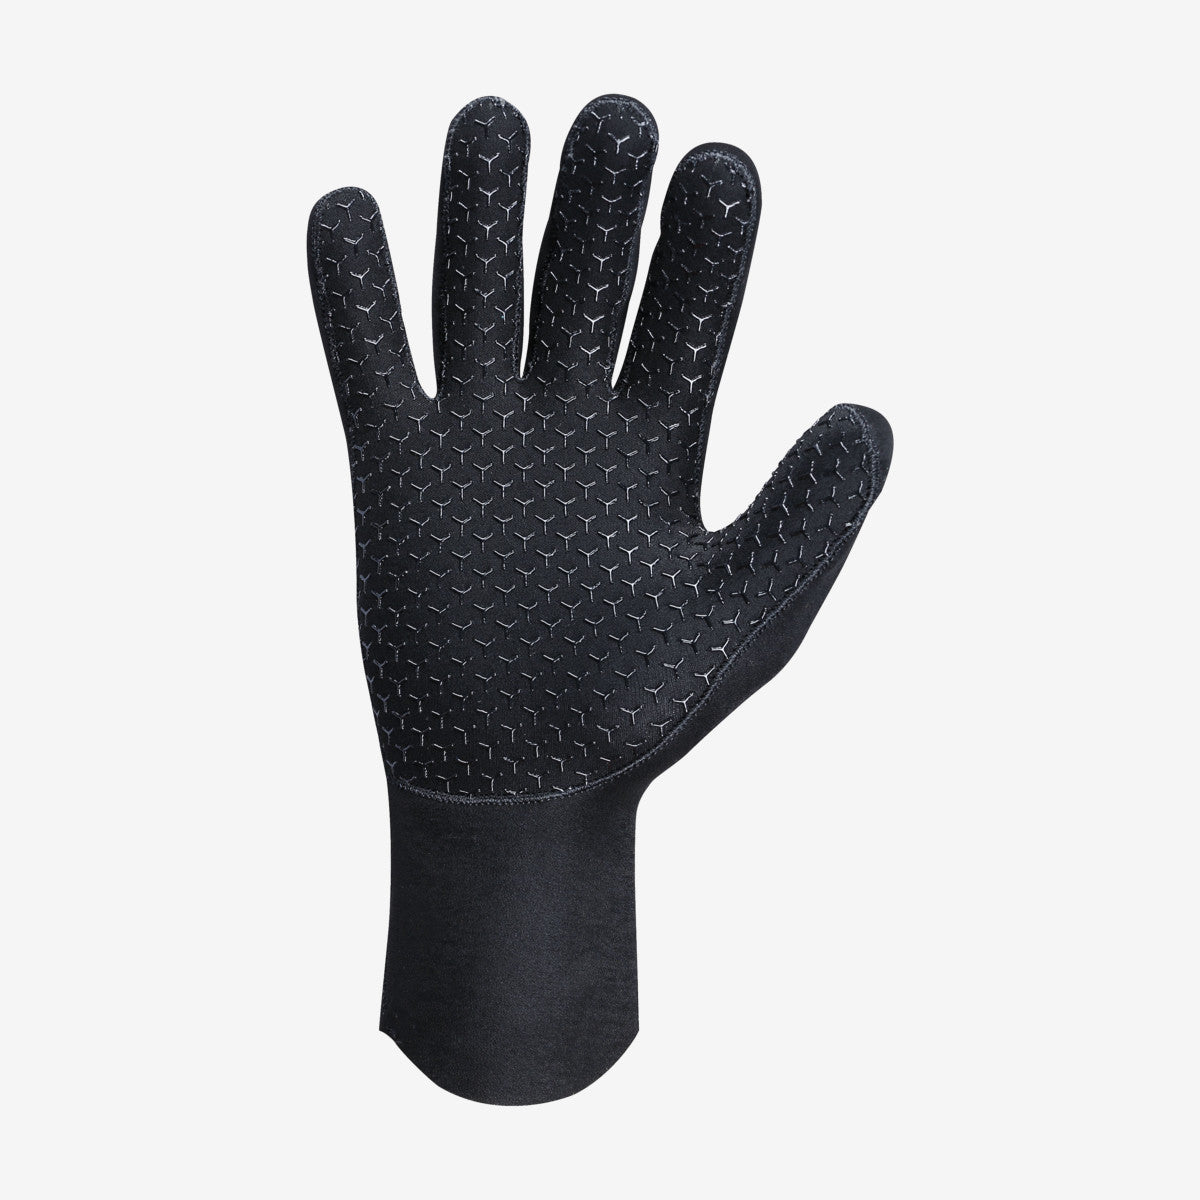 MARES Gloves Flexa classic 2mm כפפות צלילה בעובי 2 מ"מ